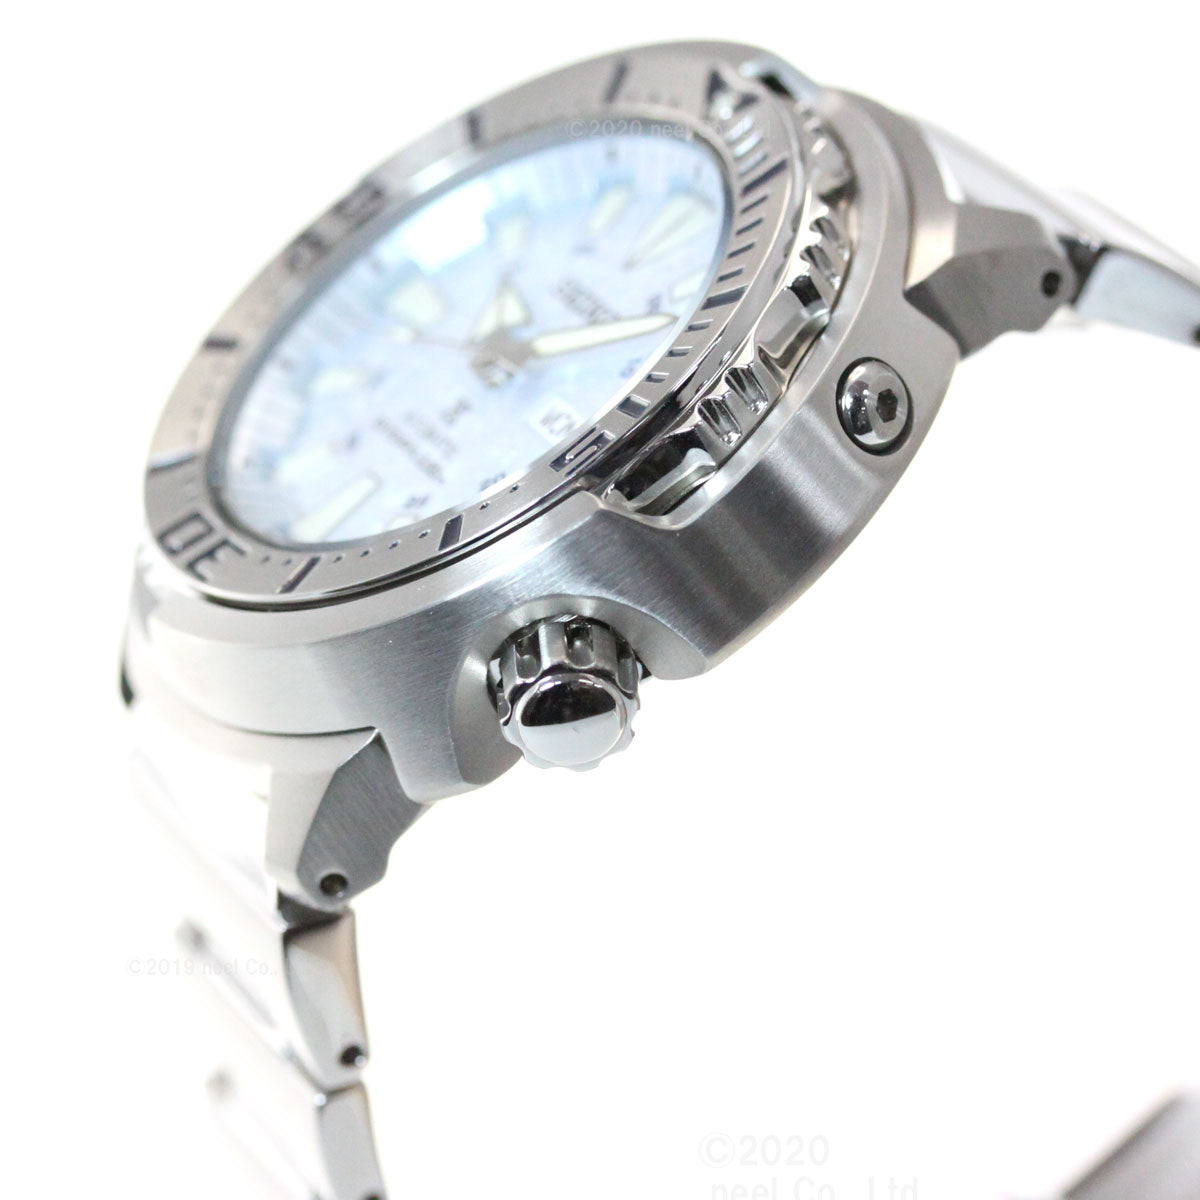 セイコー プロスペックス ダイバー 自動巻き ネット流通限定モデル 腕時計 メンズ ベビーツナ SBDY053